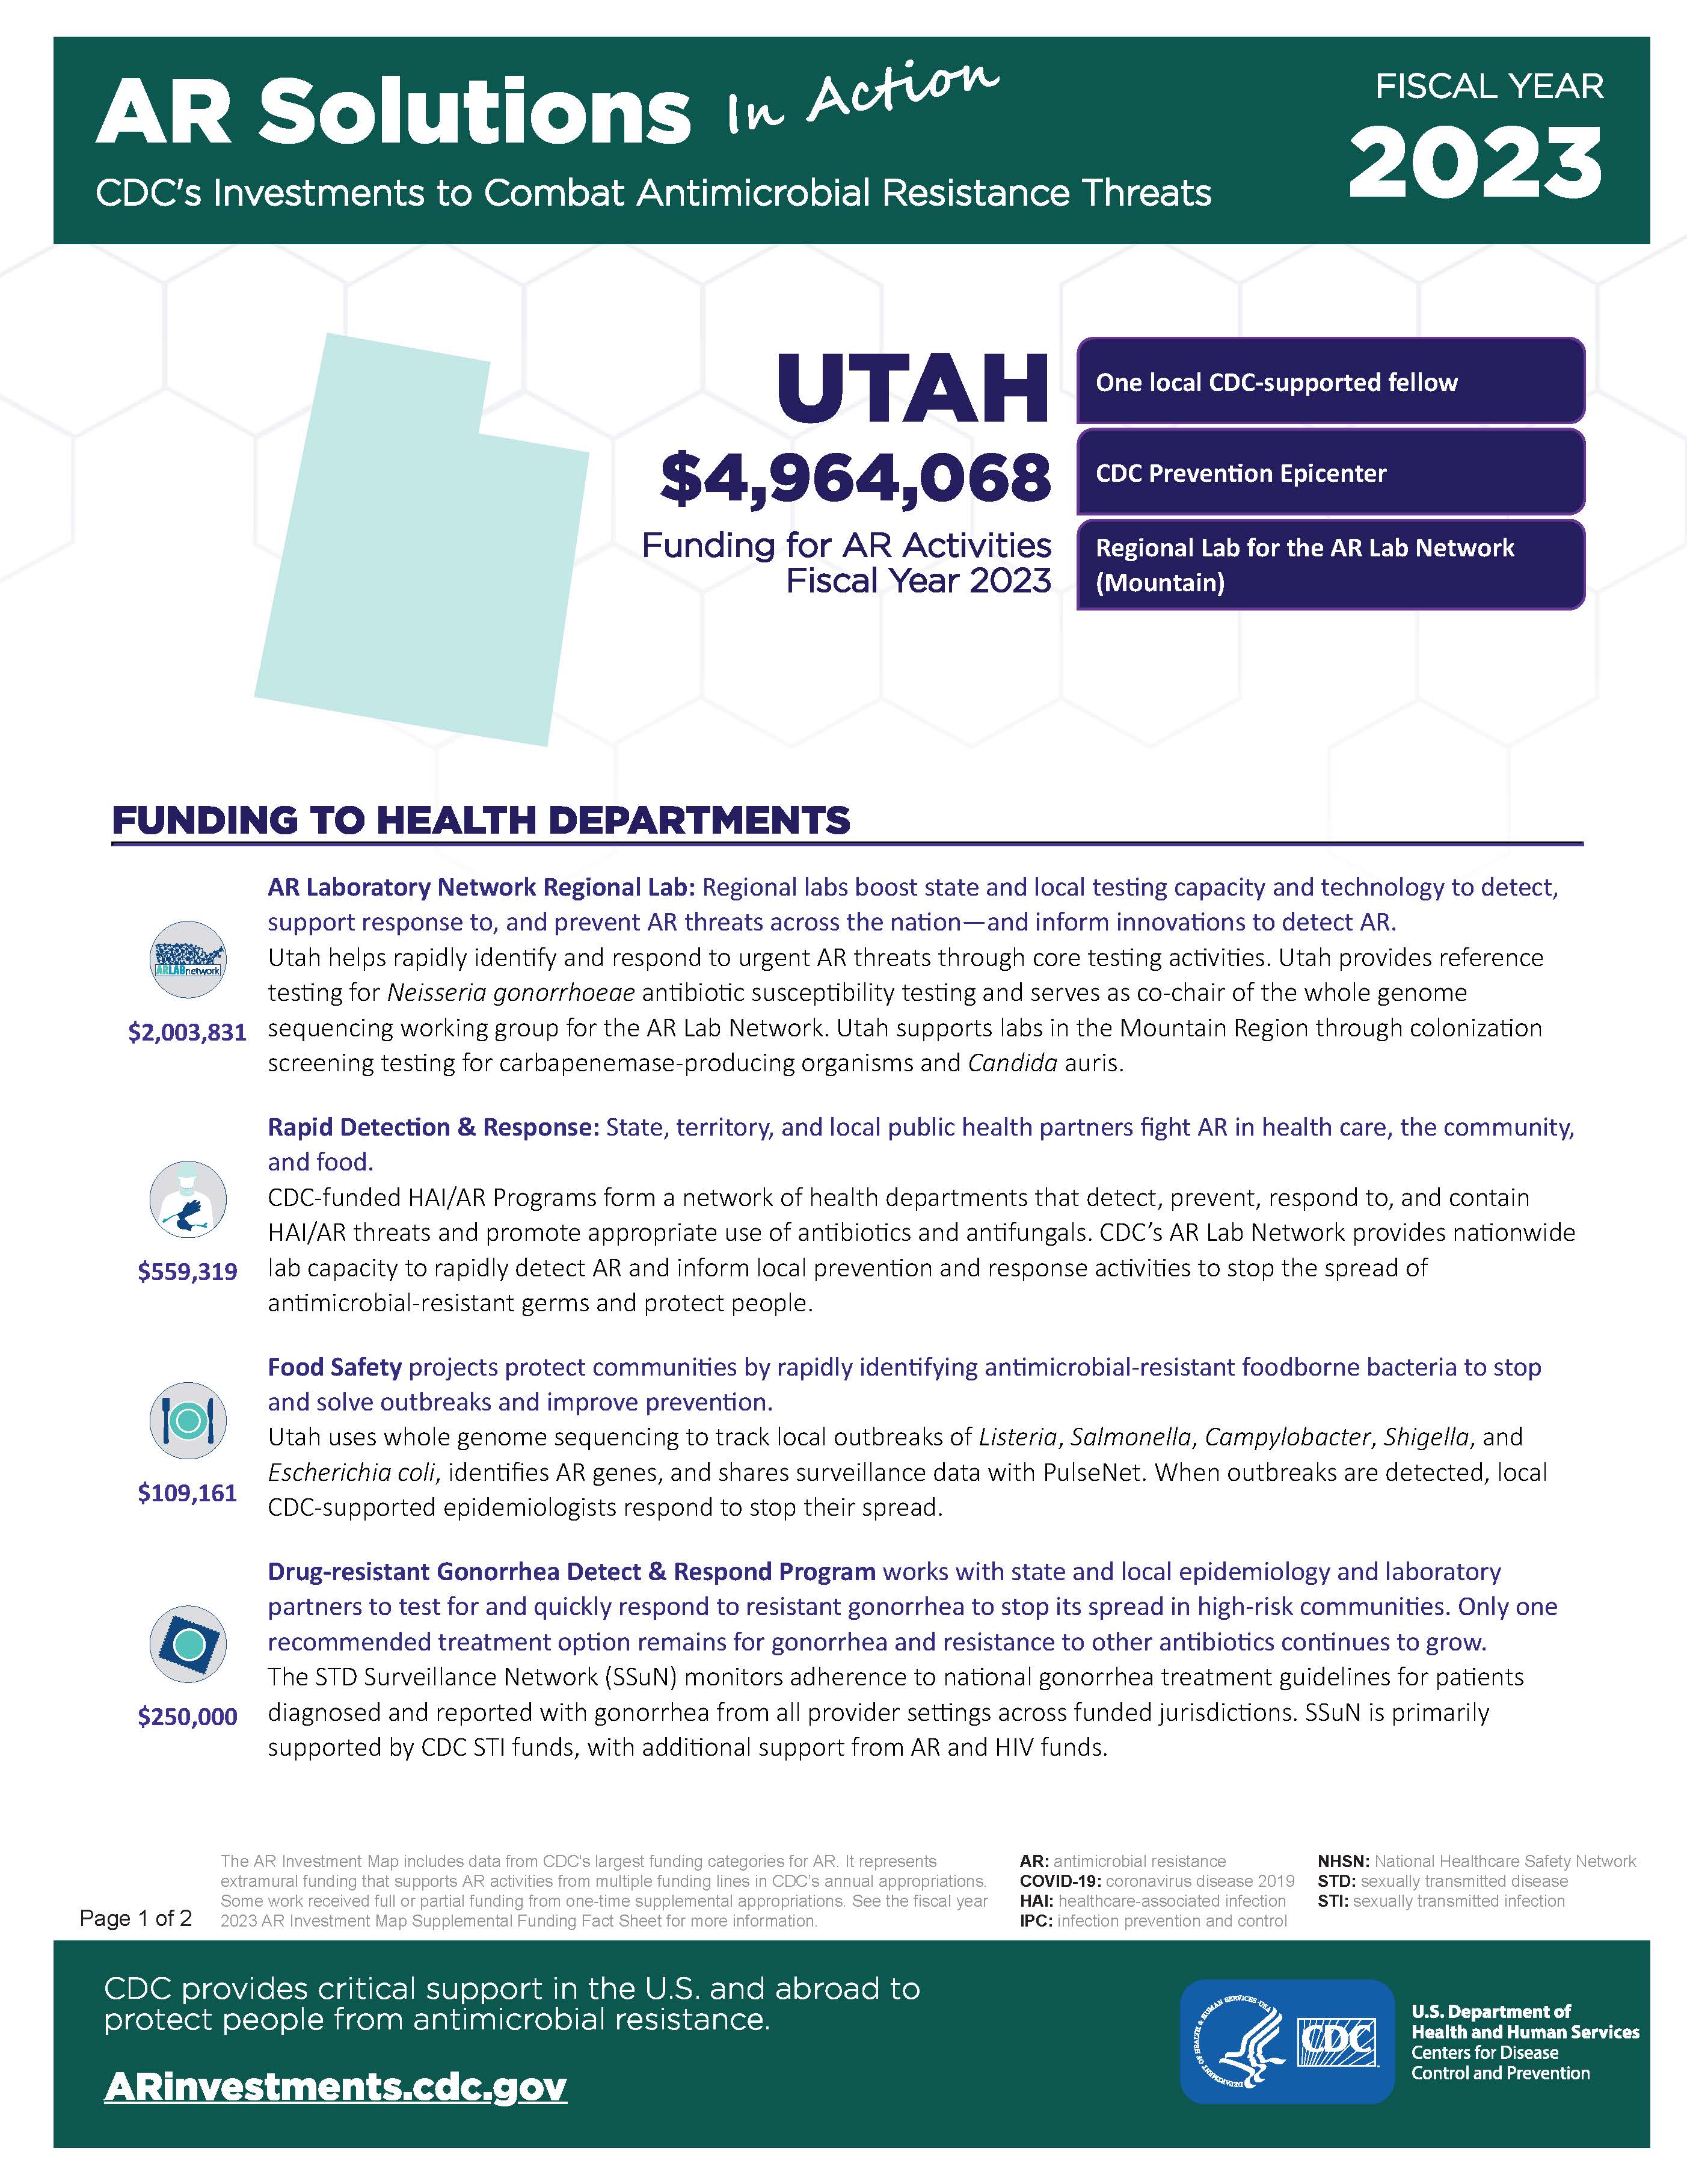 View Factsheet for Utah